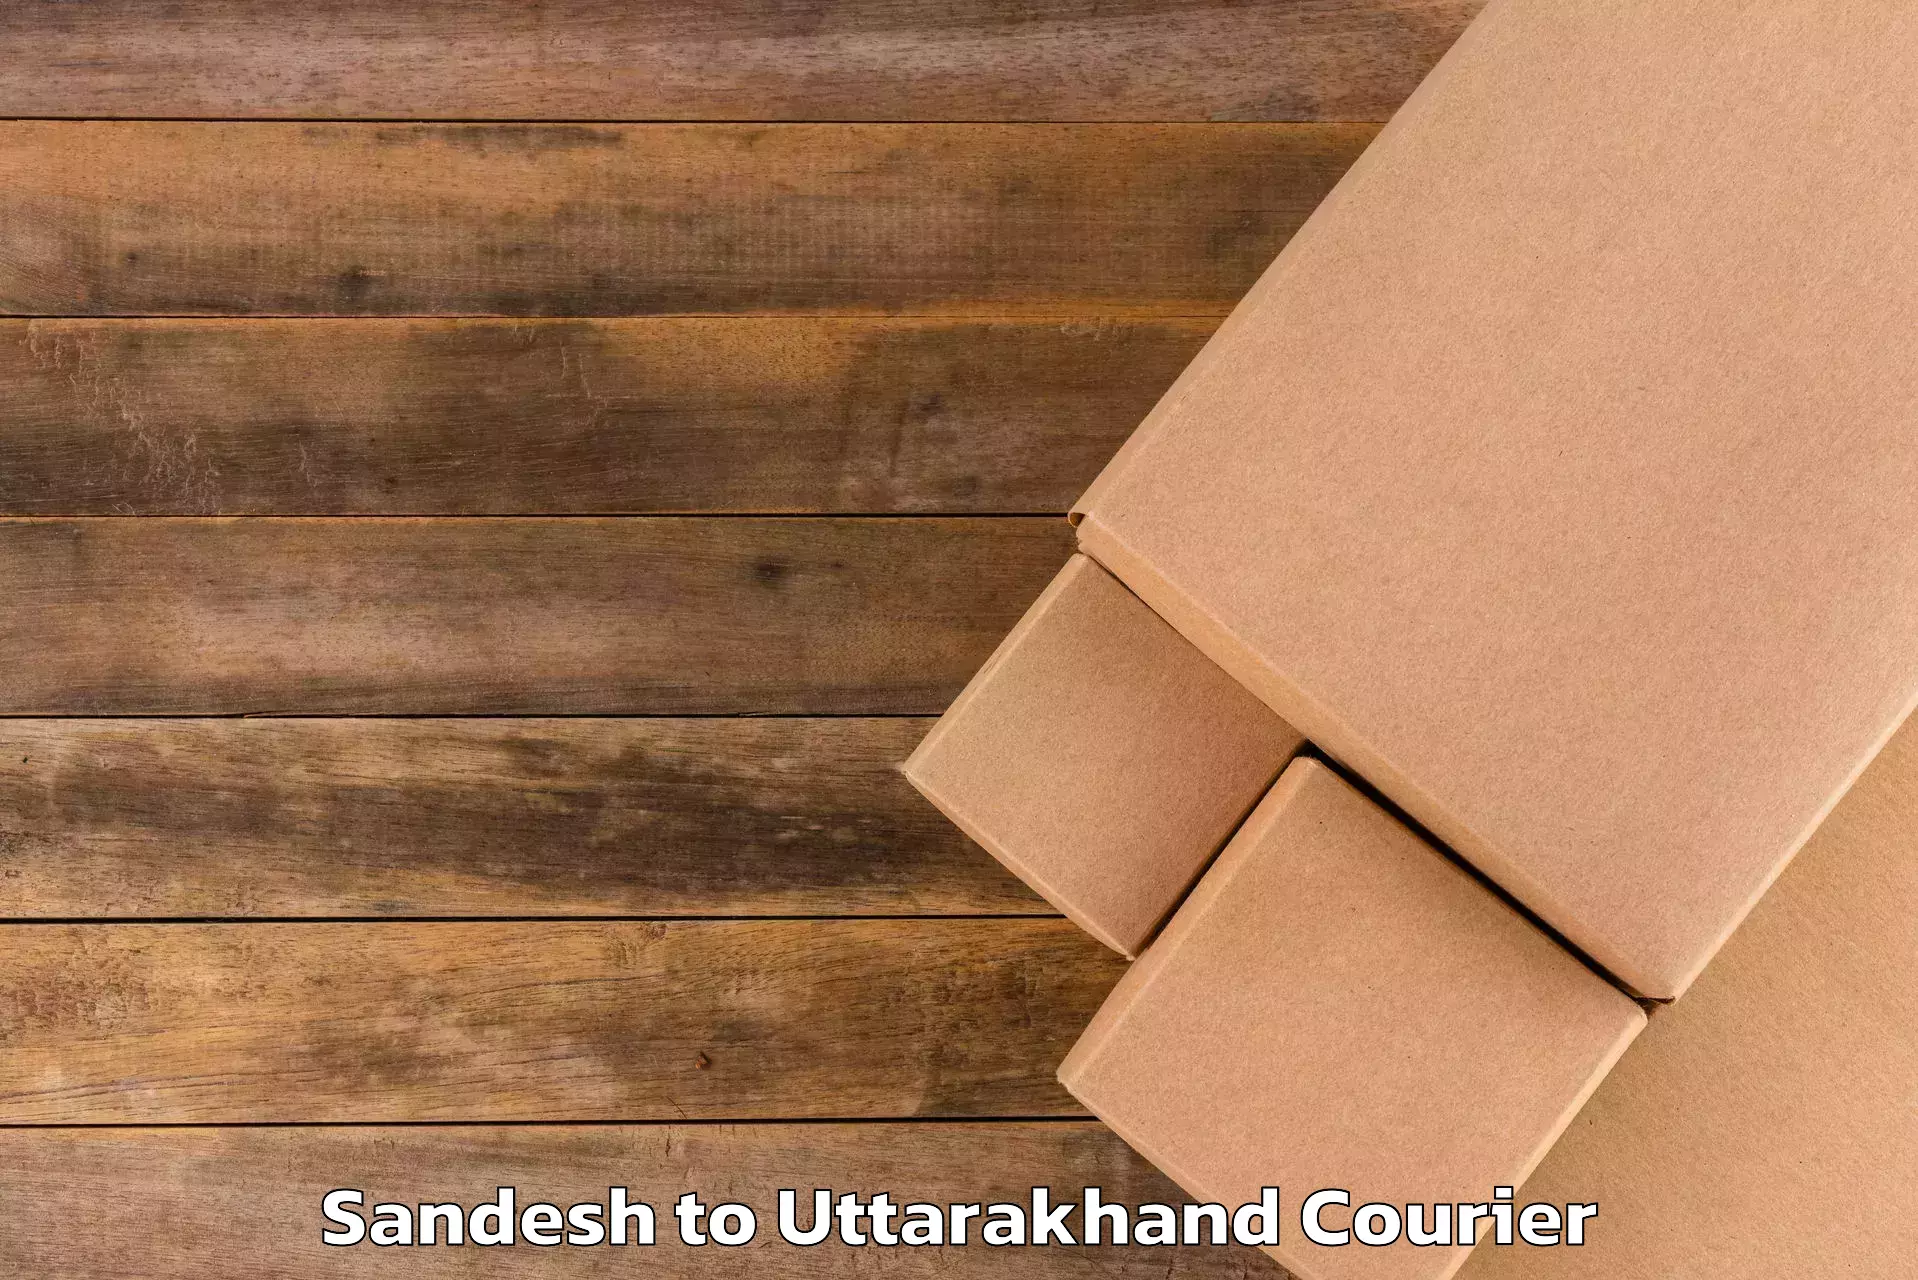 Luggage transport company Sandesh to Paithani